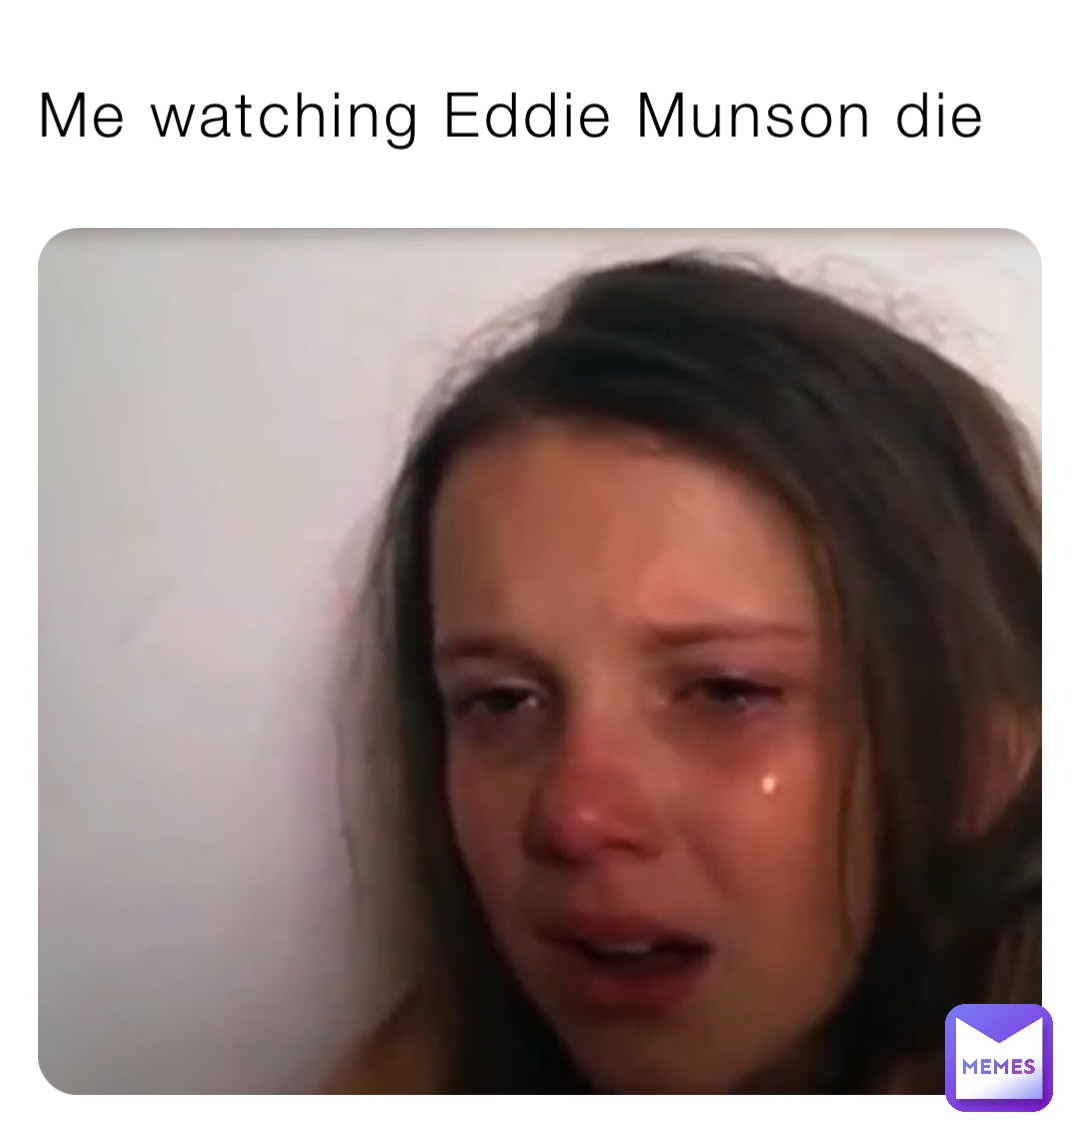 Me watching Eddie Munson die